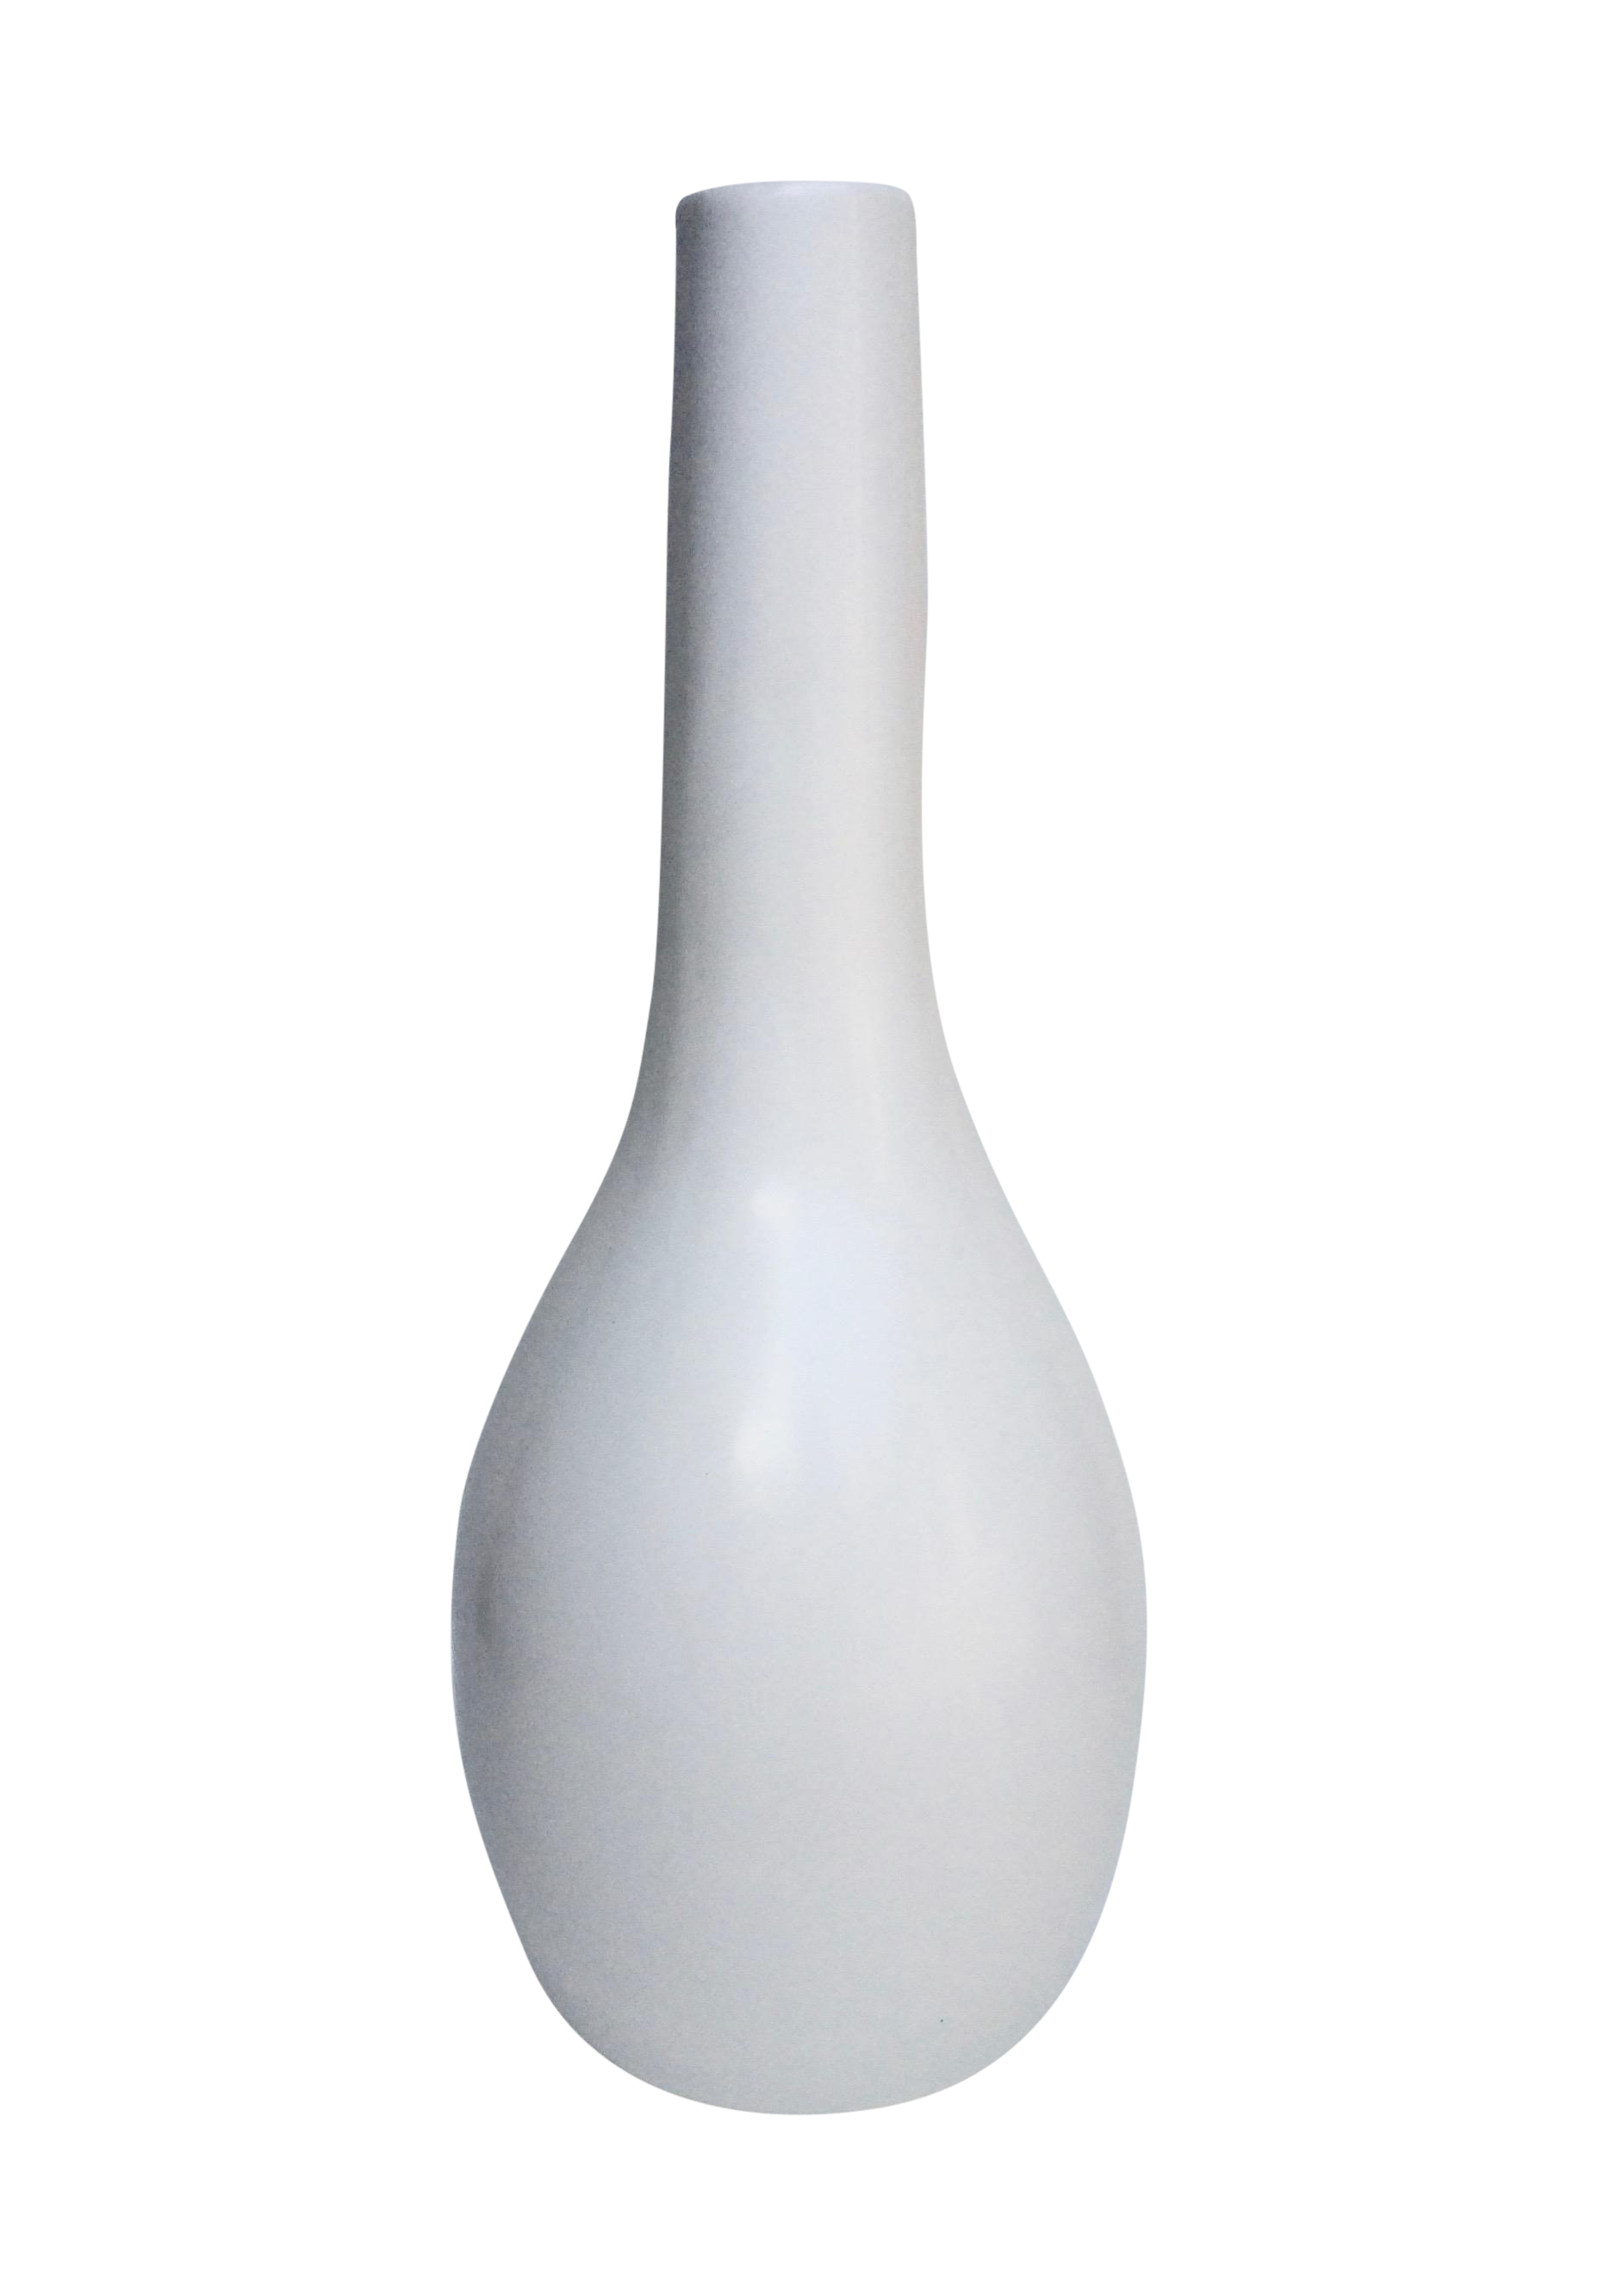 Vase PNG Image in Transparent pngteam.com